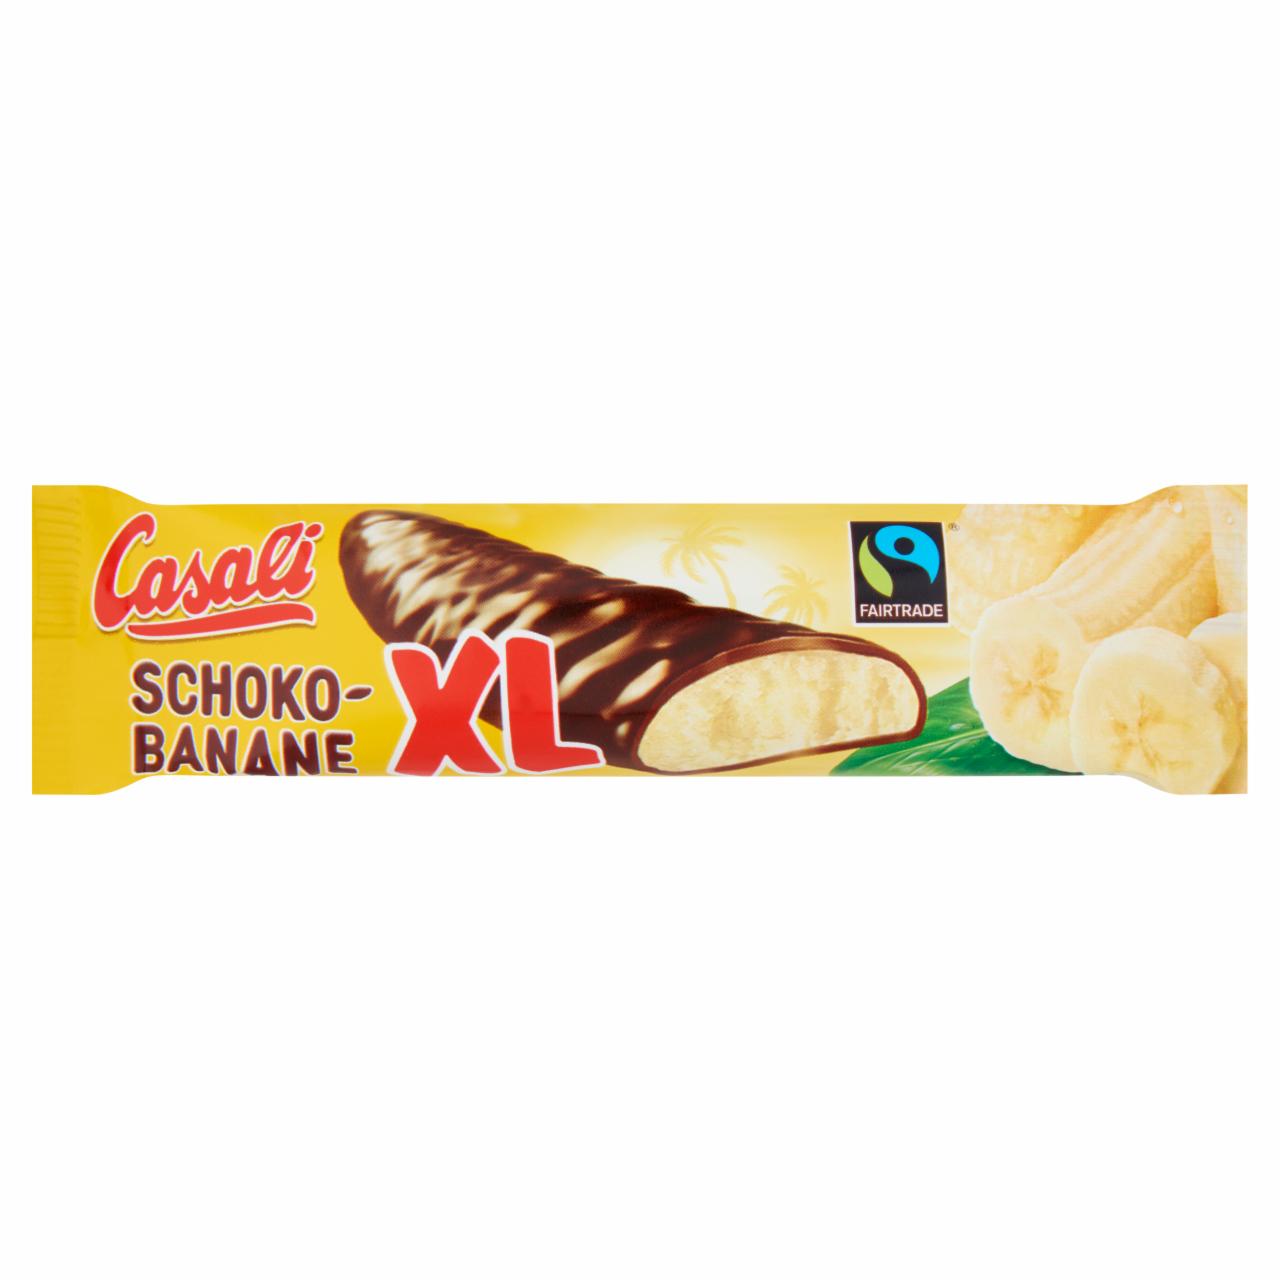 Képek - Casali Choko-Banane habosított banánkrém csokoládéba mártva 22 g